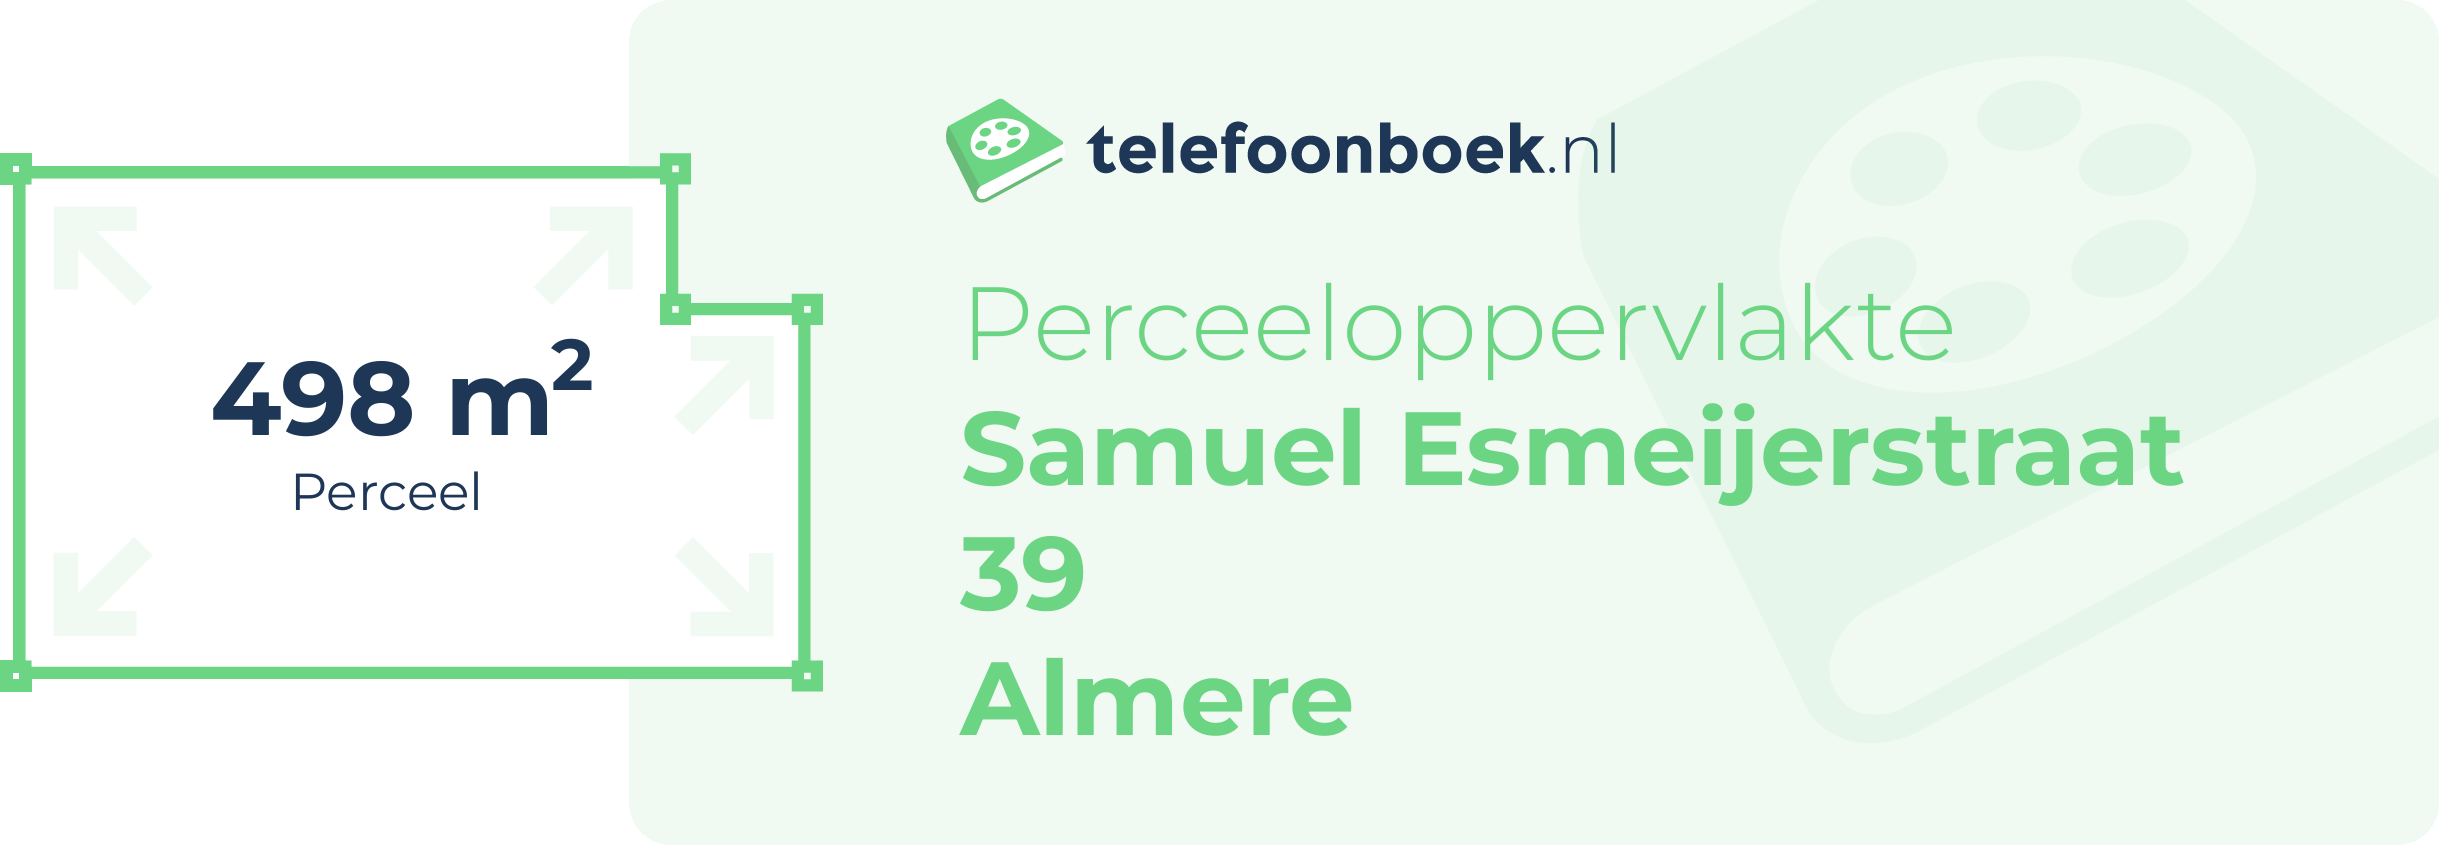 Perceeloppervlakte Samuel Esmeijerstraat 39 Almere